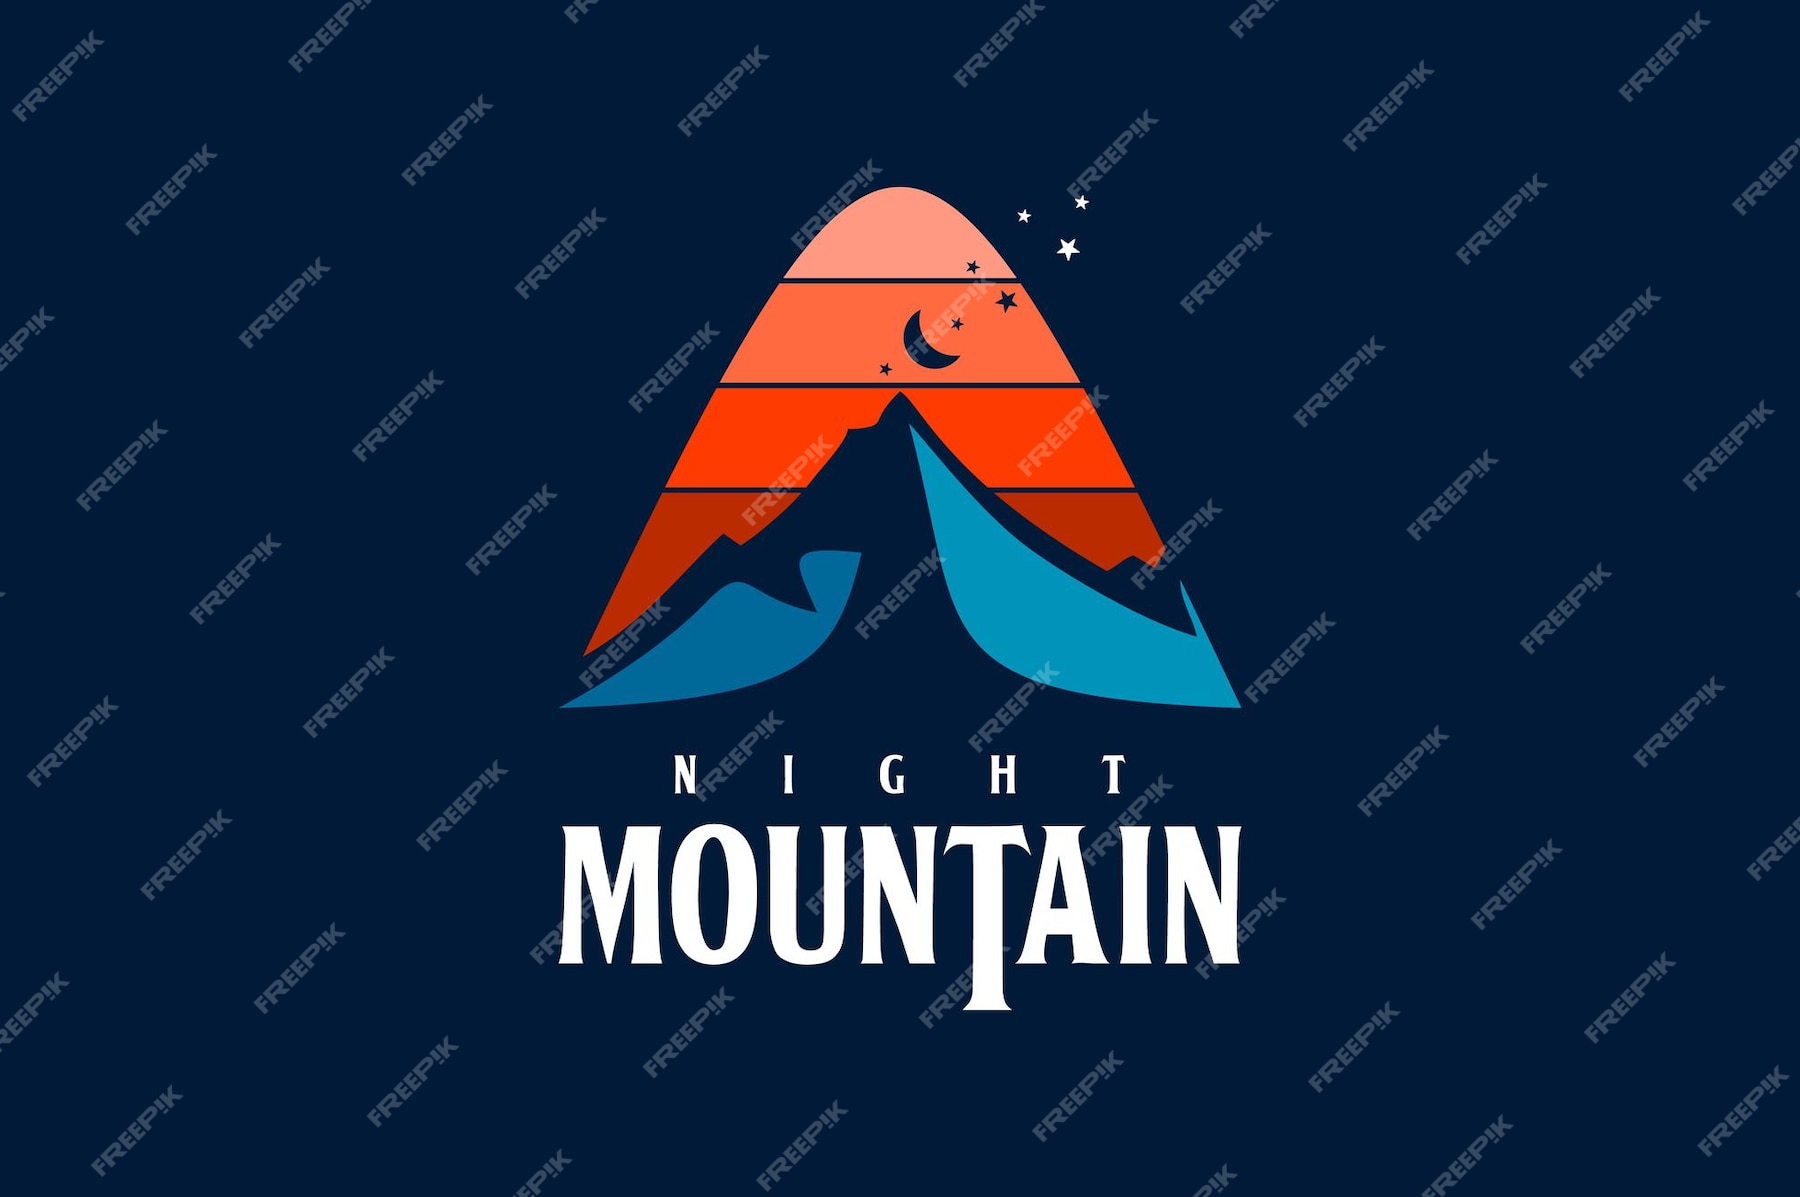 Premium Vector Mountain creek night nature design